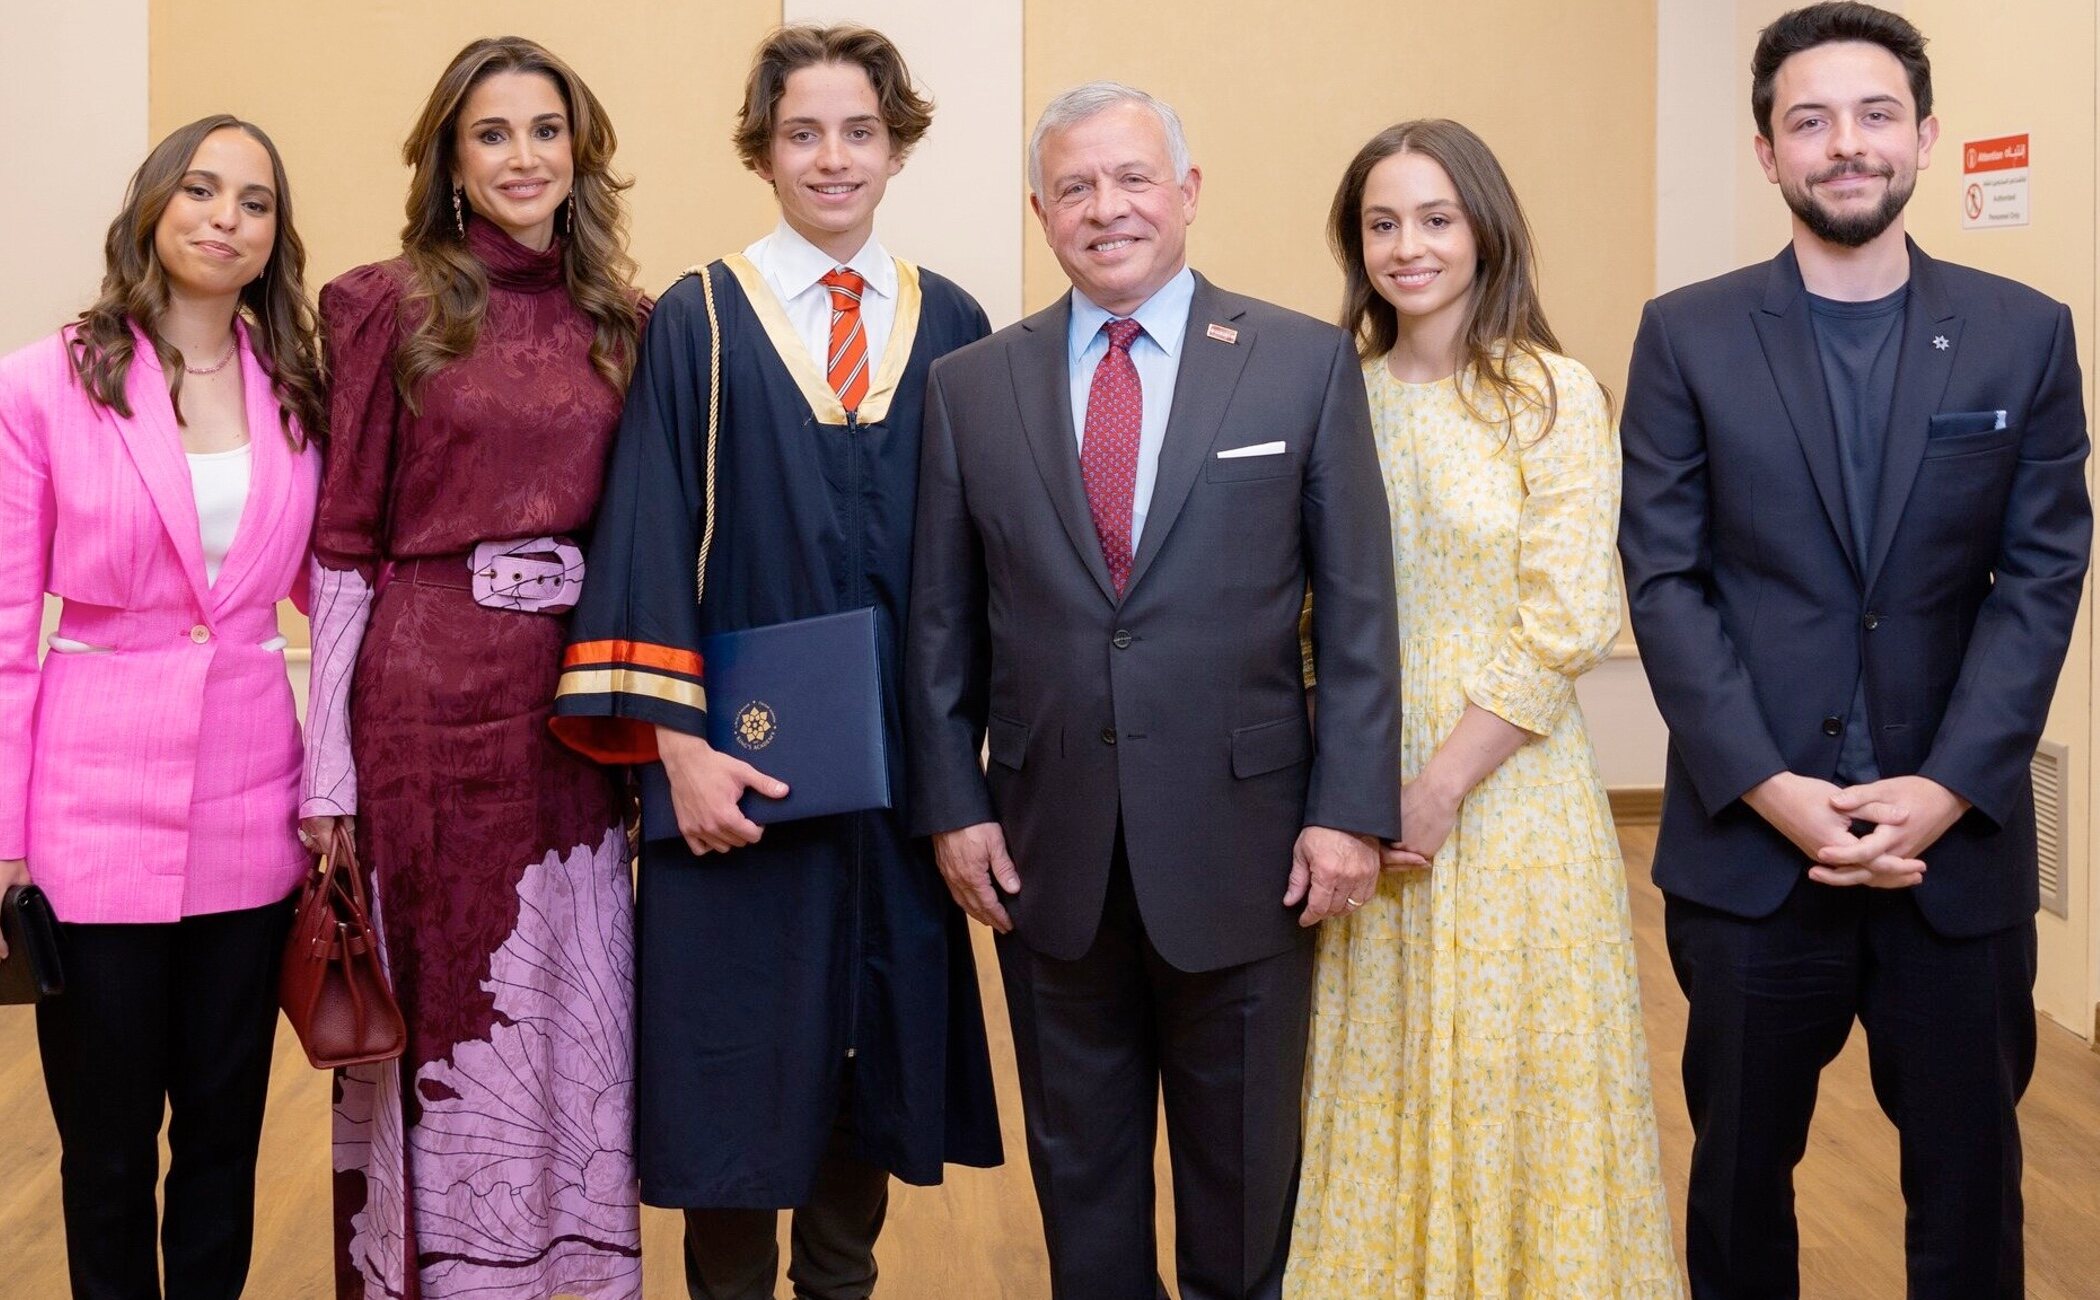 Reunión familiar, alegría, una ausencia y la broma de Rania de Jordania en la graduación de Hashem de Jordania